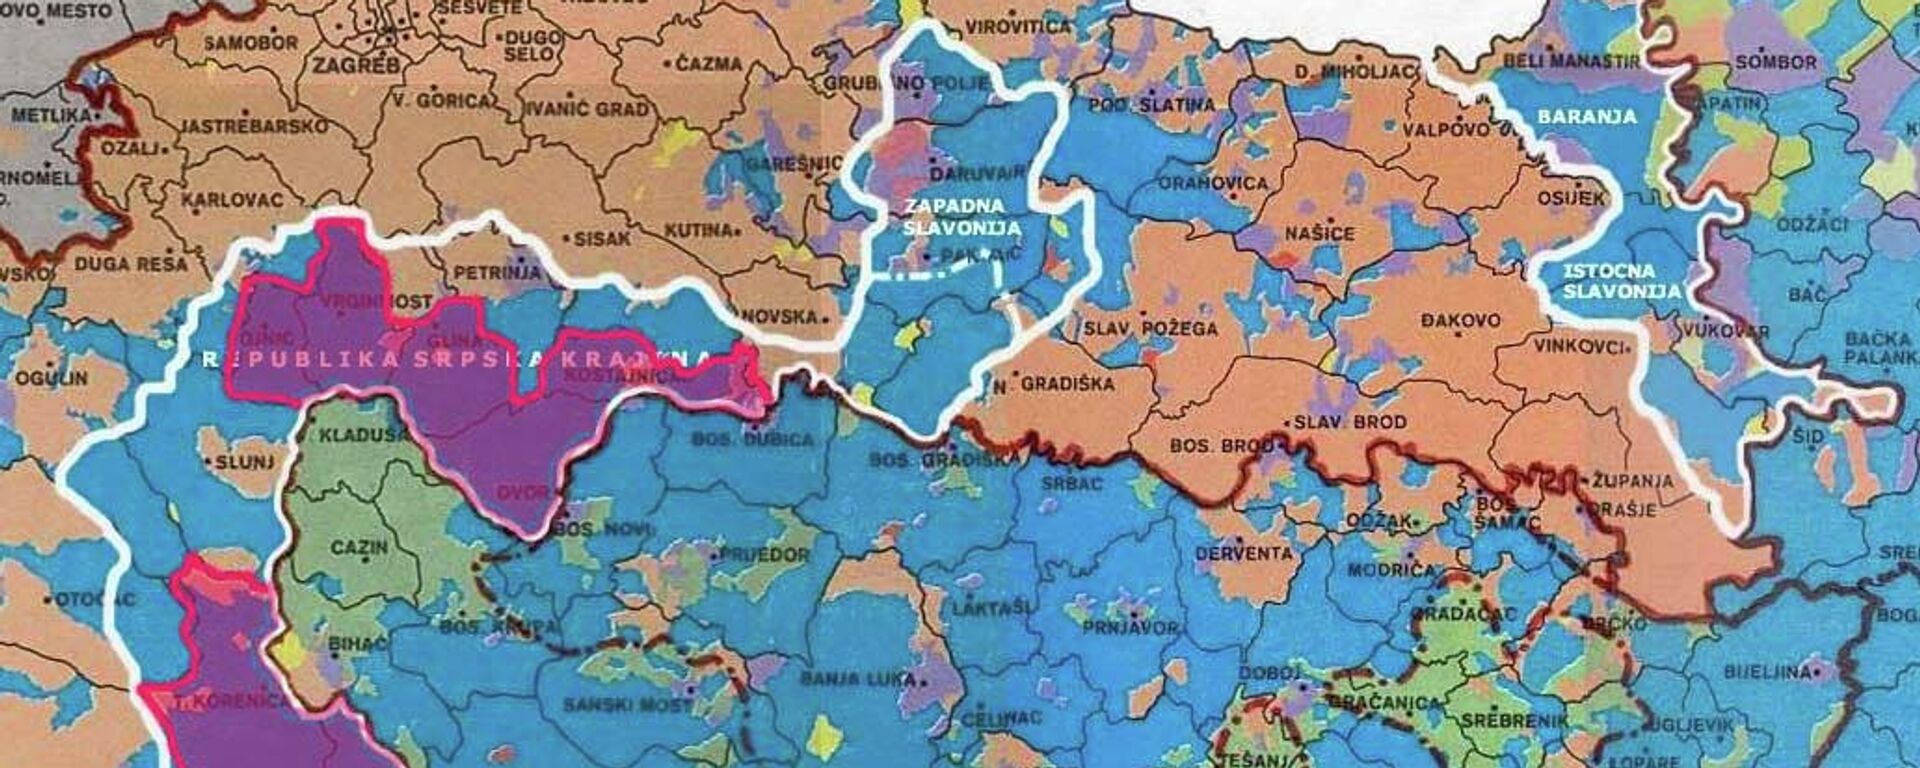 Карта Републике Српске Крајине и Плана З-4 - Sputnik Србија, 1920, 25.12.2021